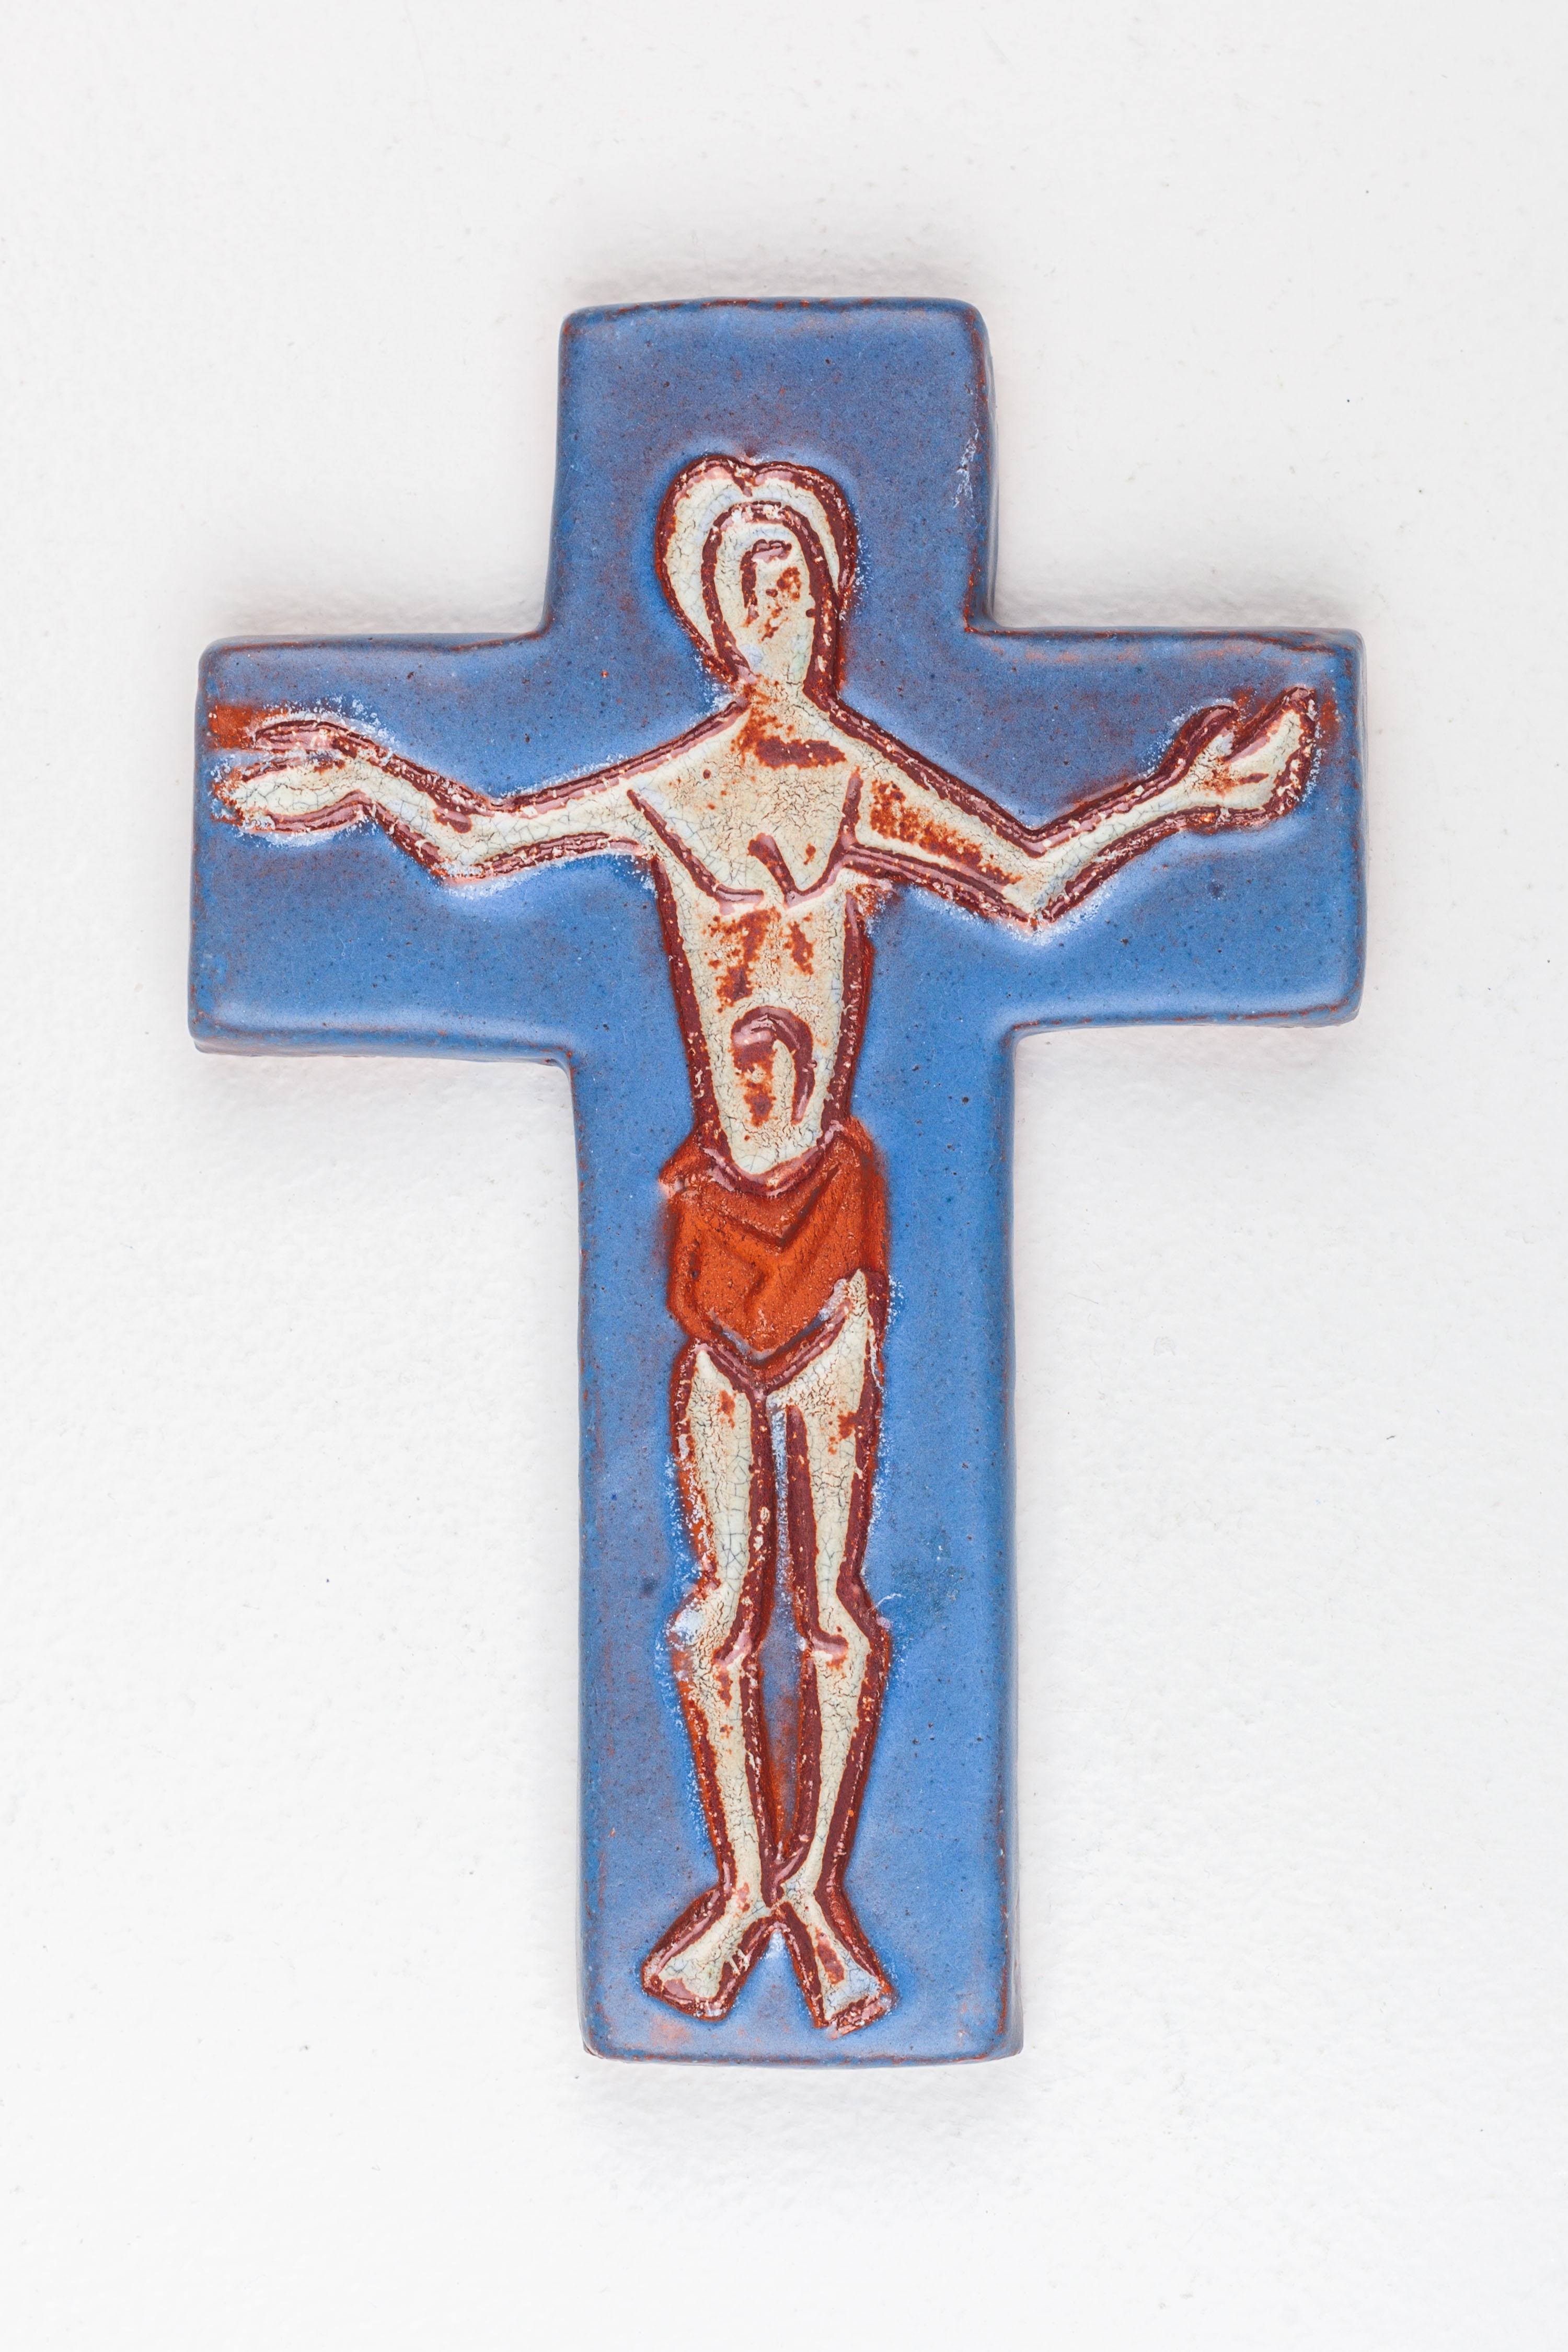 Une croix en céramique bleue avec un Christ abstrait dessiné au trait, enveloppé dans un tissu de couleur rouille. Cette croix fusionne harmonieusement le symbolisme profond de l'iconographie religieuse avec une touche expérimentale, créant ainsi